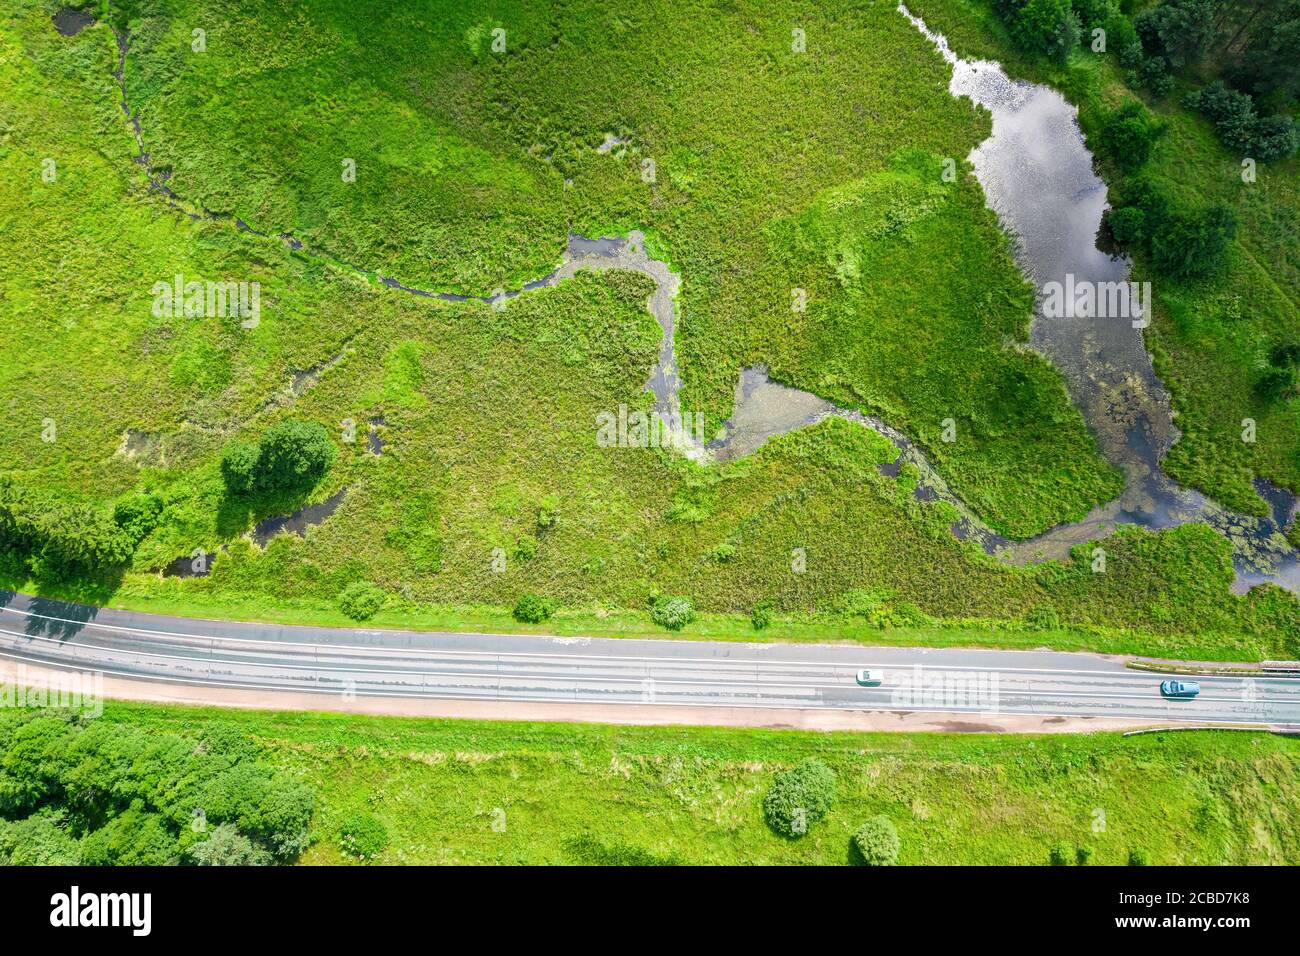 campagne verte avec petite rivière et route. paysage rural en été ensoleillé. photo aérienne Banque D'Images